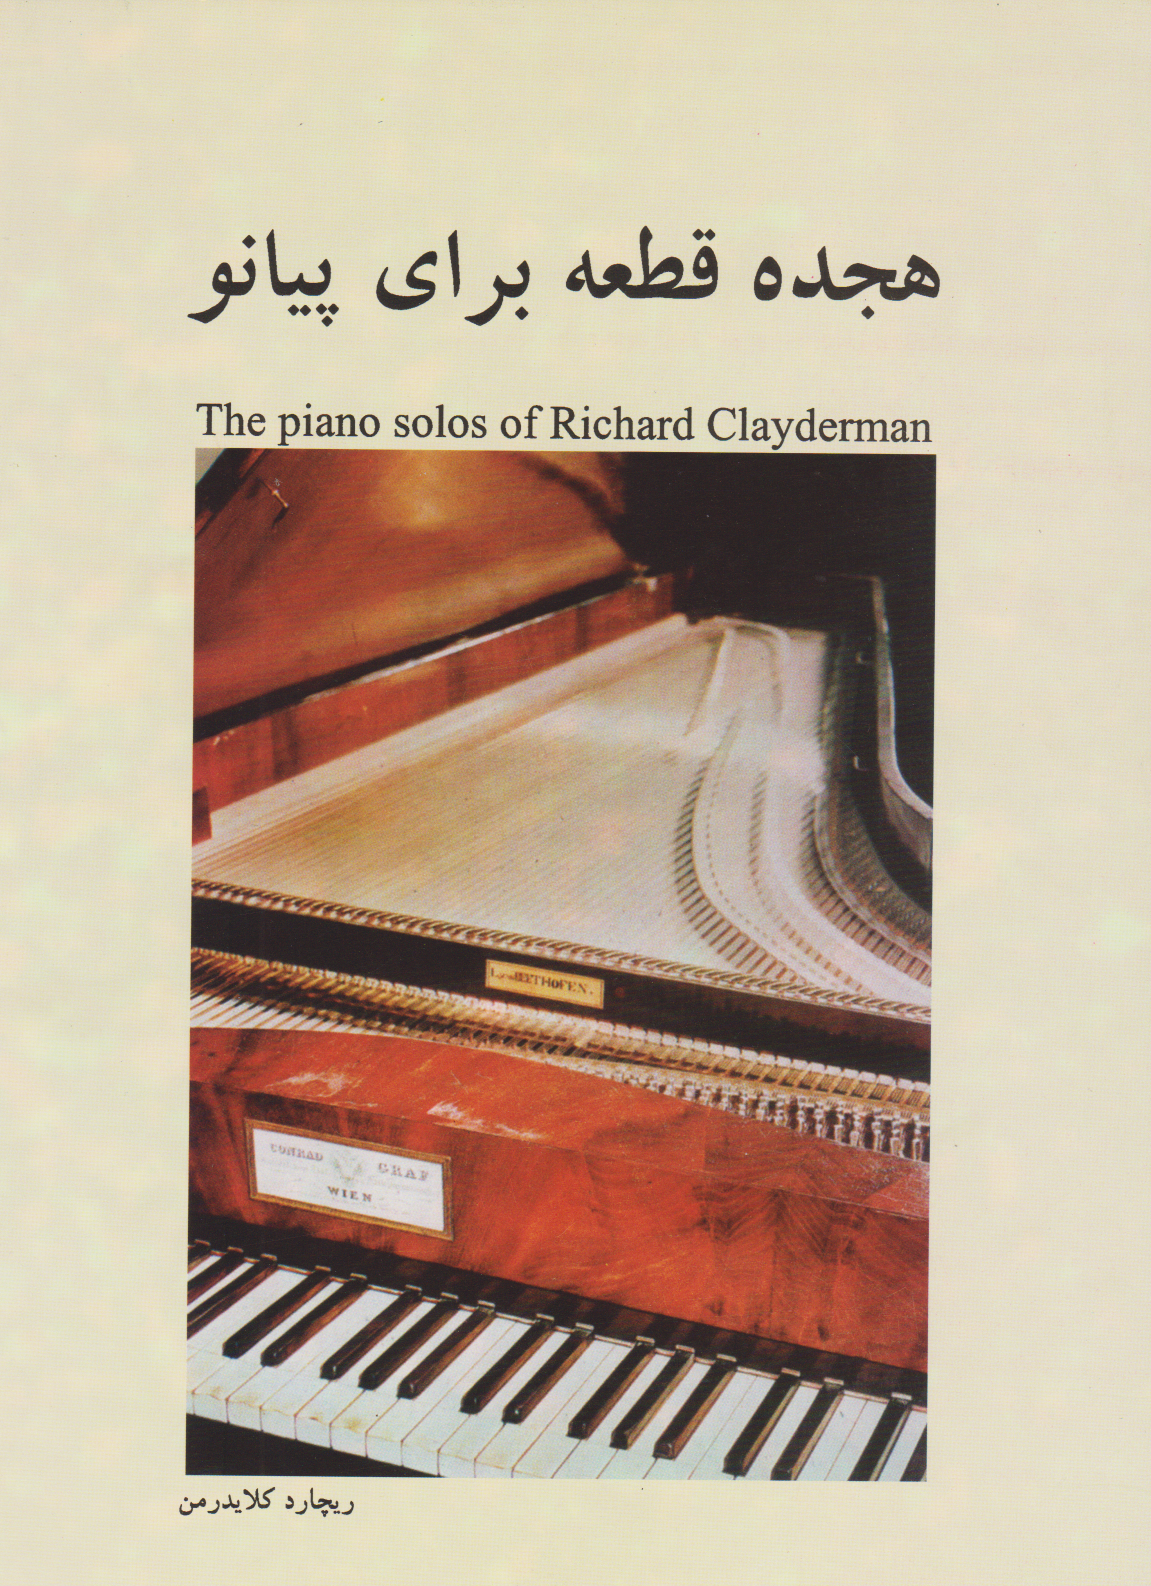 کتاب هجده قطعه برای پیانو ریچارد کلایدرمن